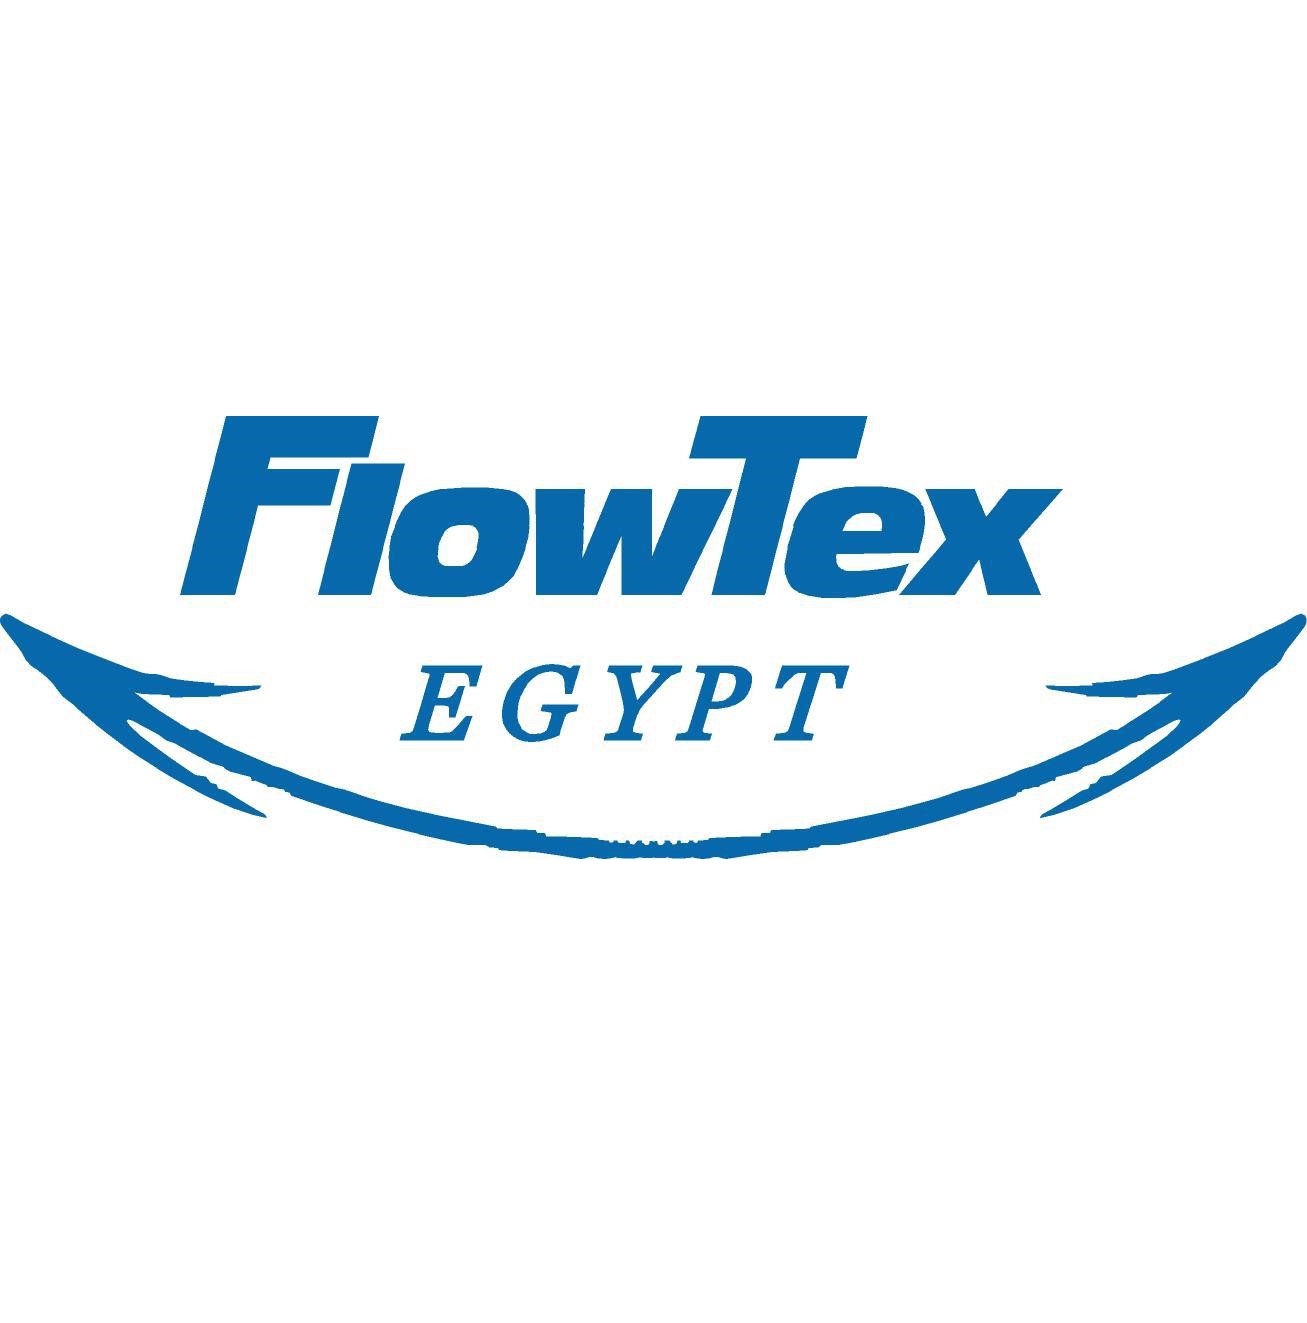 FlowTex EGYPT